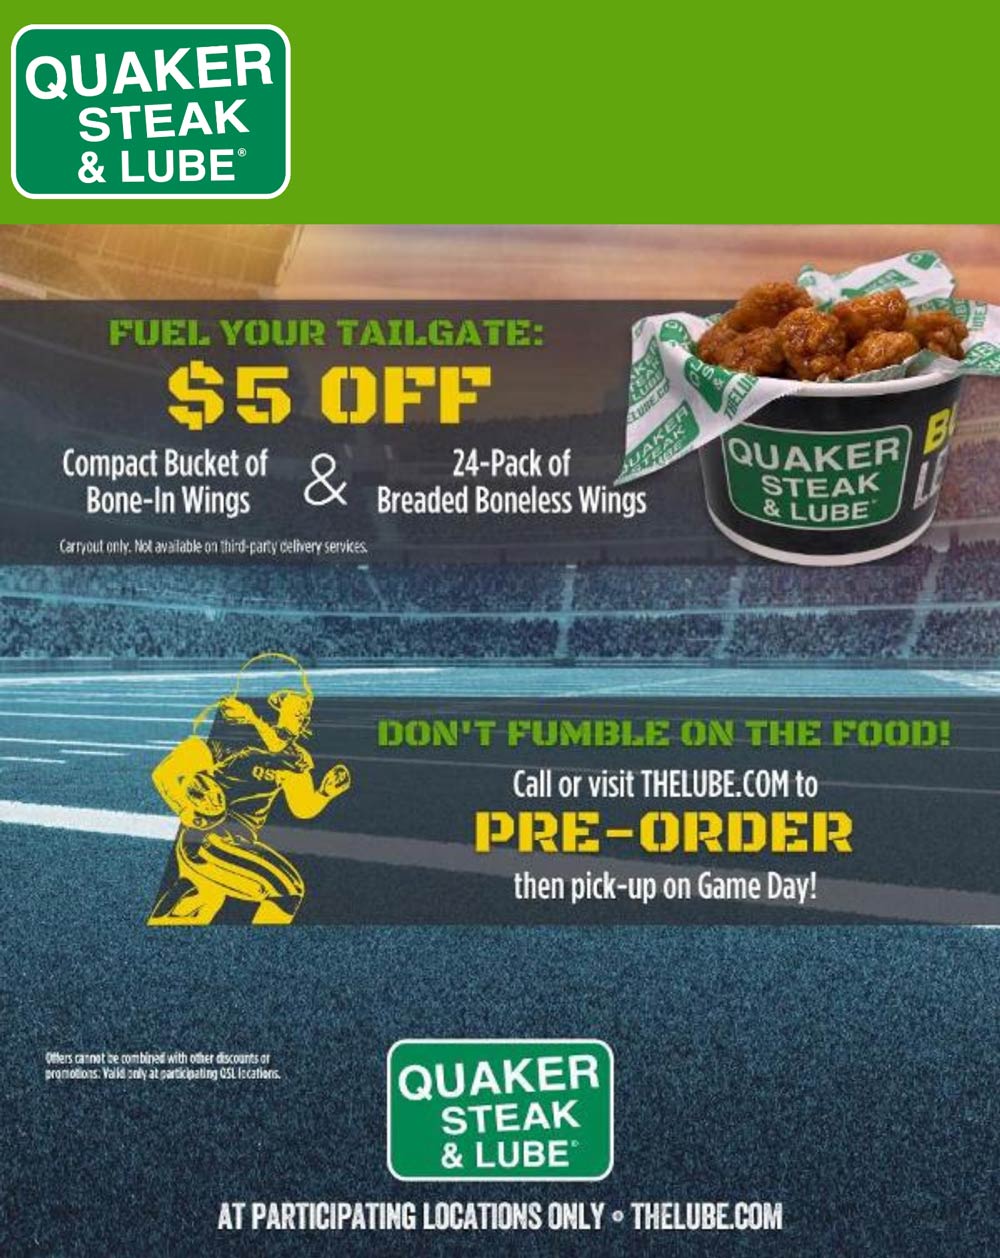 Quaker Steak & Lube restaurants Coupon  $5 off bucket of wings Sunday at Quaker Steak & Lube restaurants #quakersteaklube 